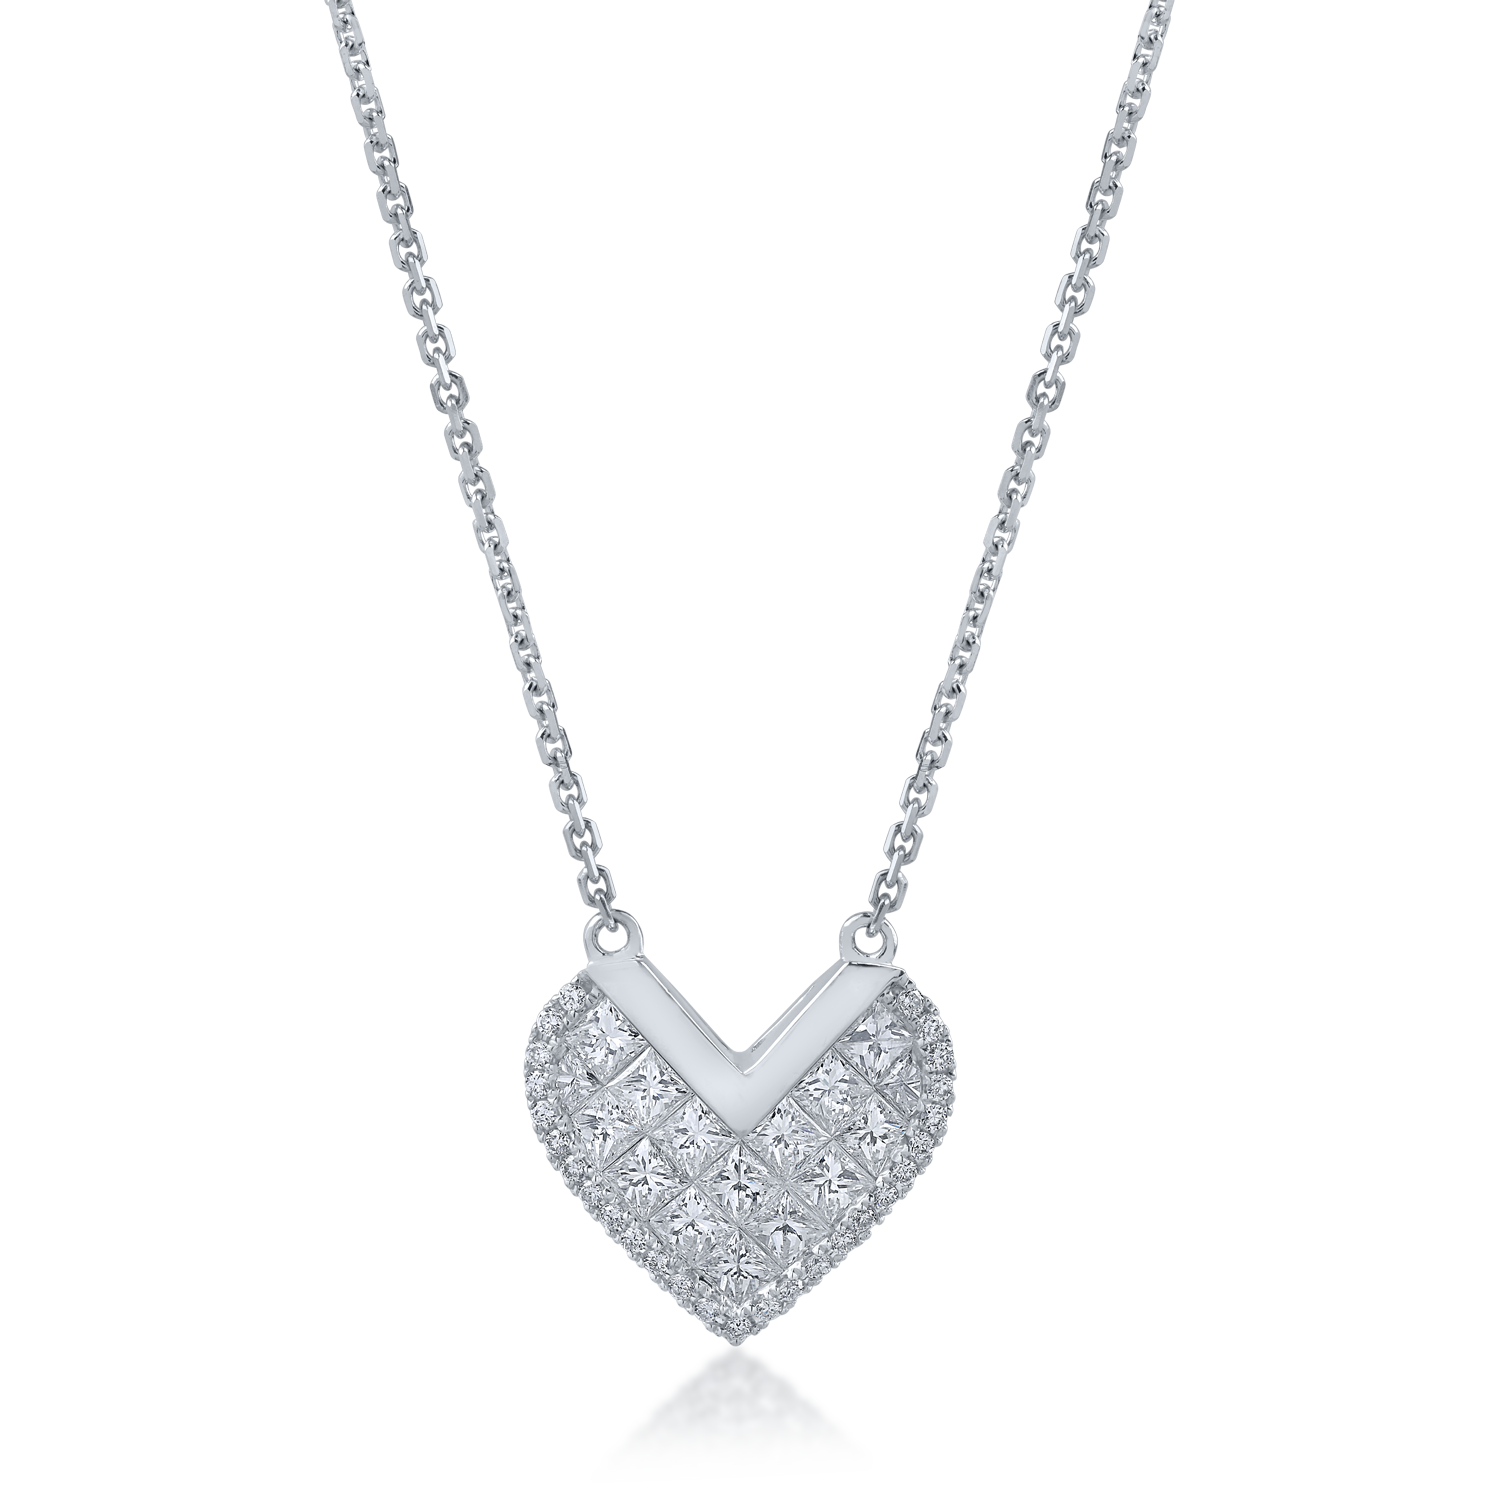 Łańcuszek z zawieszką w kształcie serca z białego złota z 0.98ct diamentami